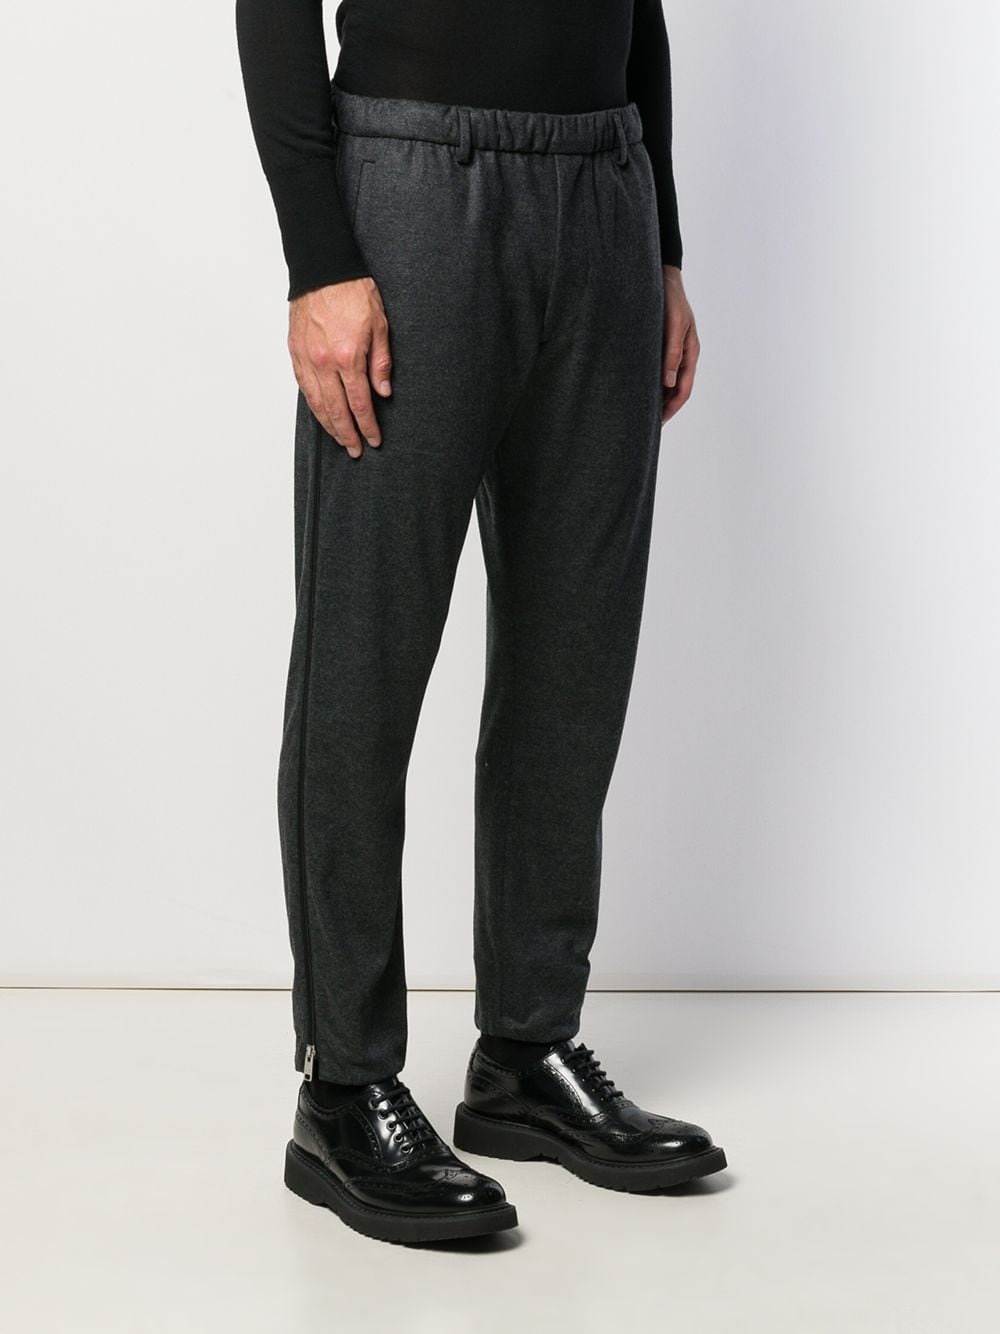 фото Prada брюки скинни с манжетами на молнии